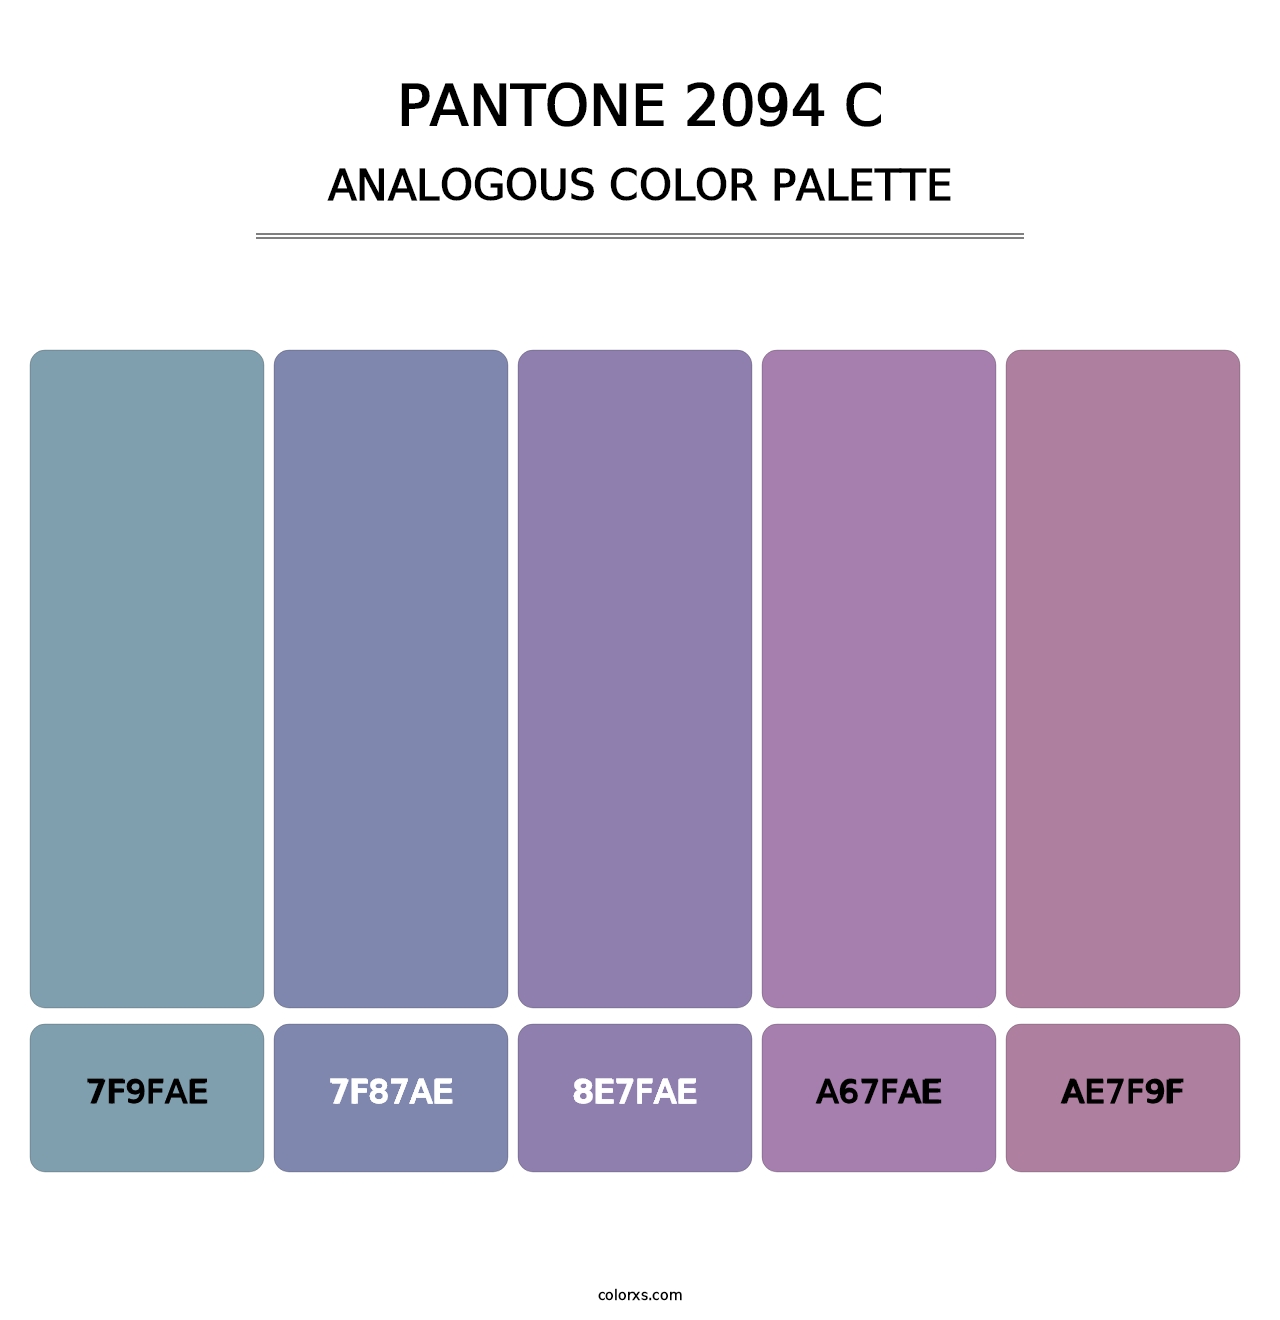 PANTONE 2094 C - Analogous Color Palette